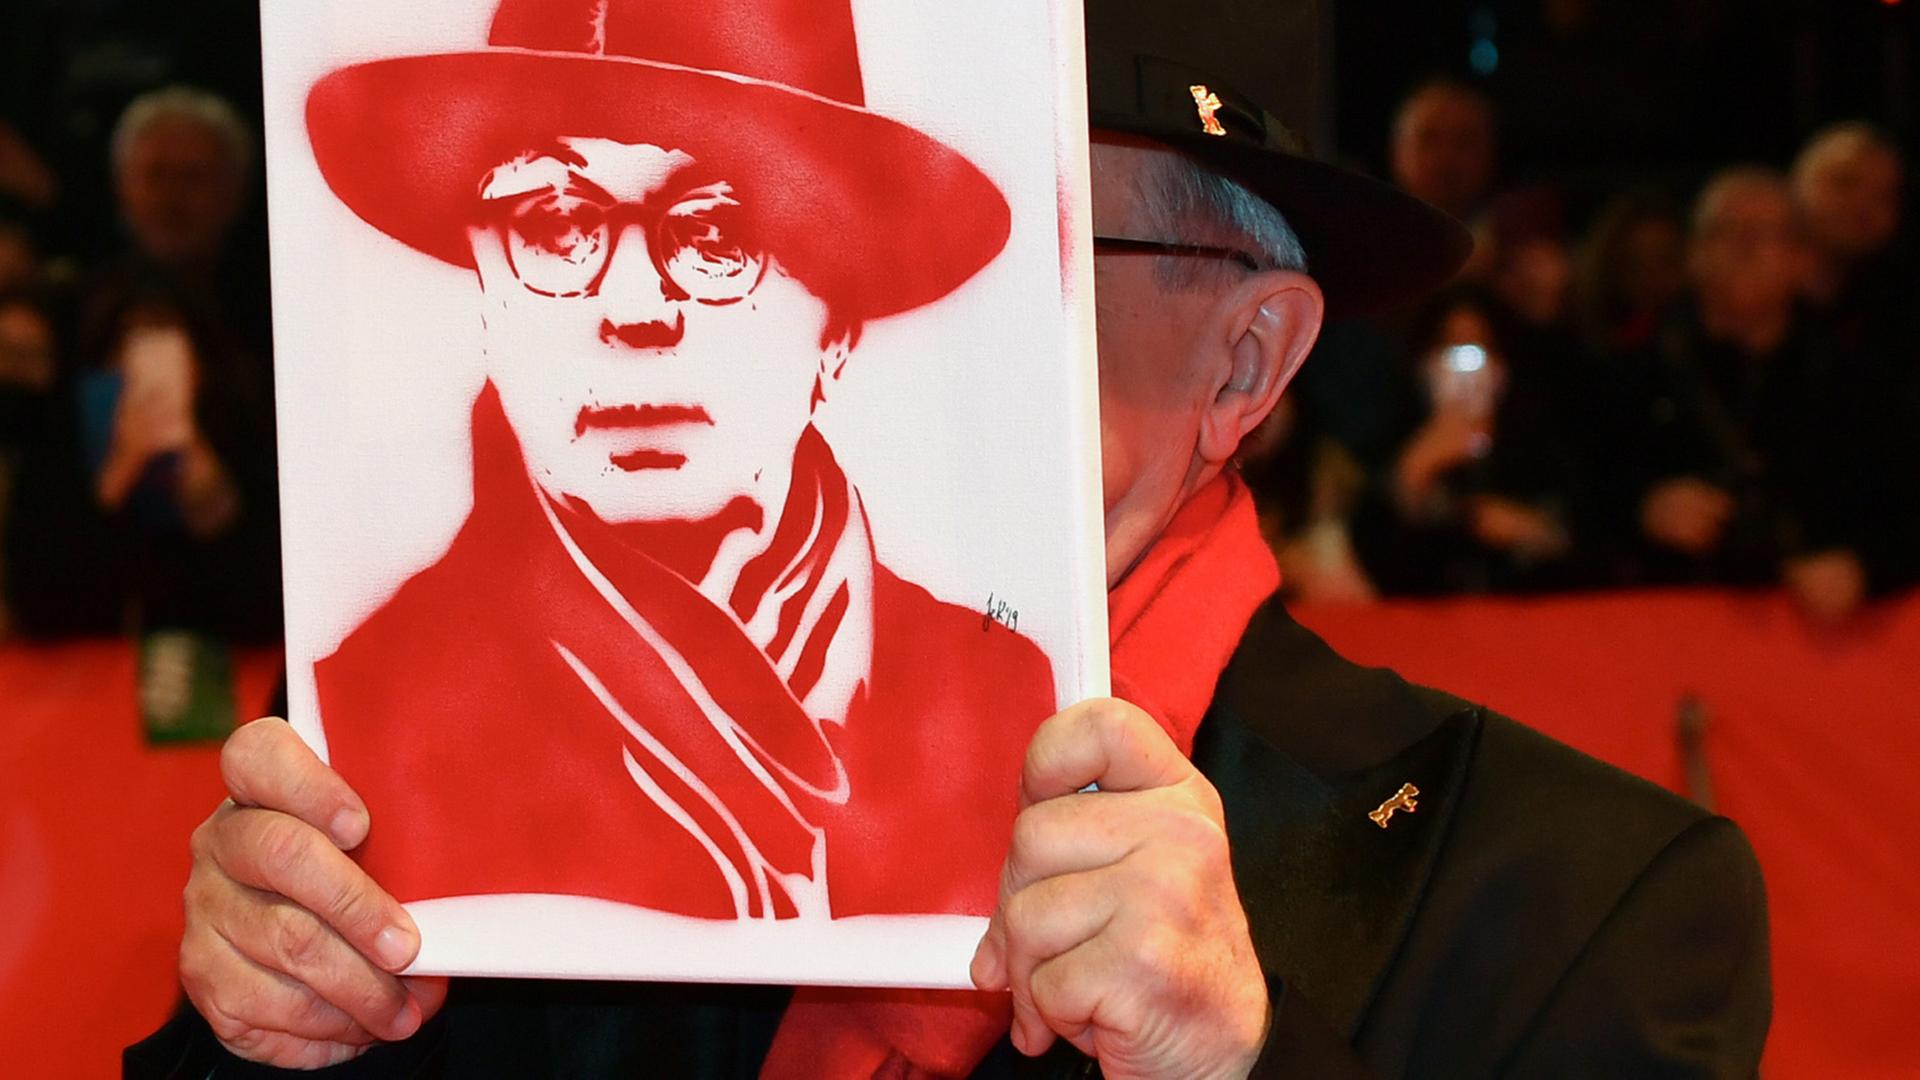 Abschluss der 69. Berlinale: Der scheidende langjährige Festivaldirektor Dieter Kosslick zeigt sich am roten Teppich mit einem Portrait von sich - natürlich ganz in rot